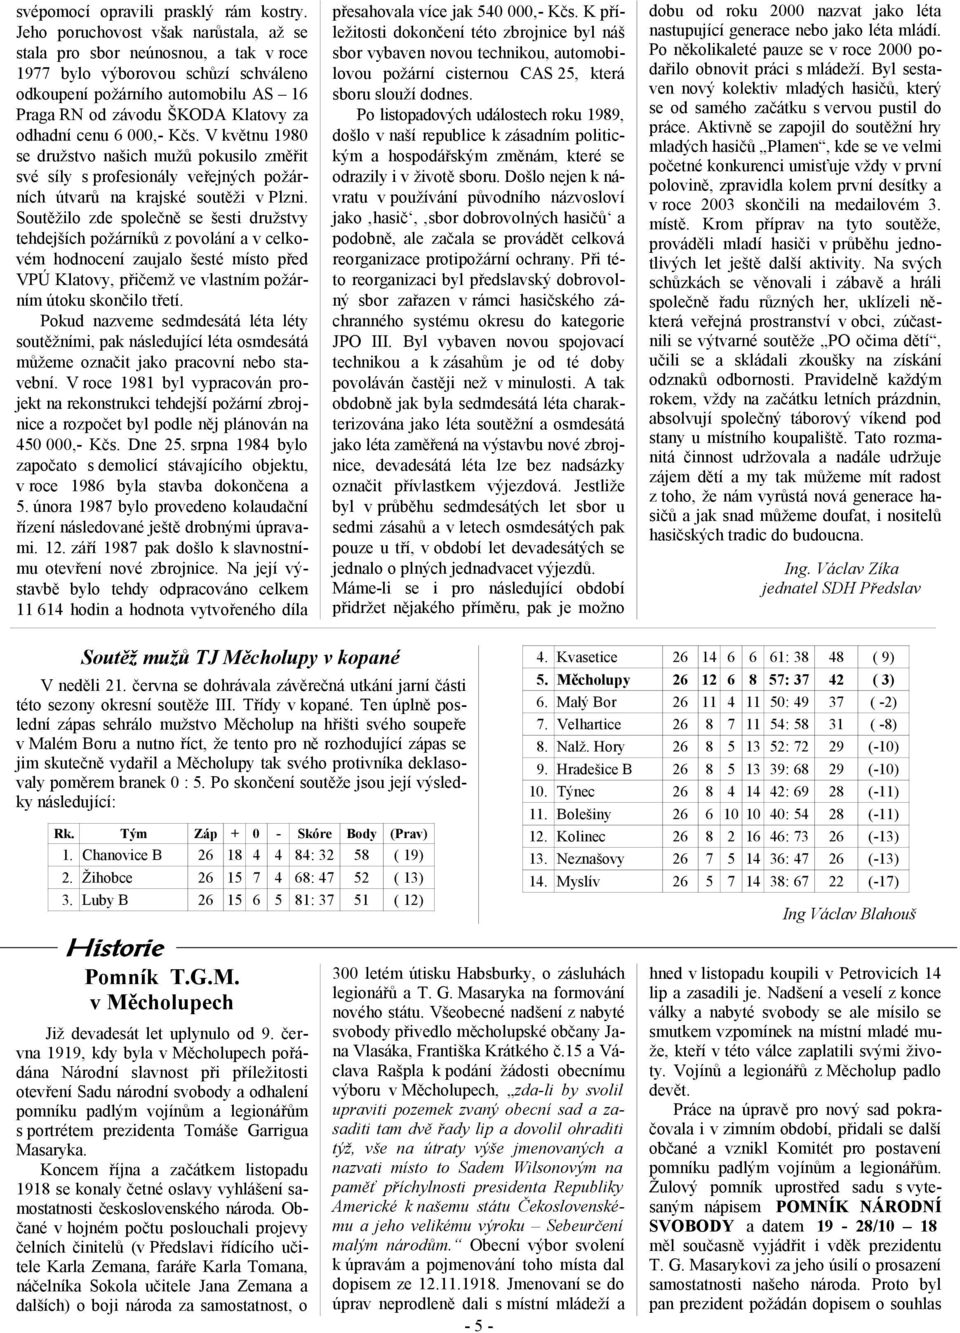 cenu 6 000,- Kčs. V květnu 1980 se družstvo našich mužů pokusilo změřit své síly s profesionály veřejných požárních útvarů na krajské soutěži v Plzni.